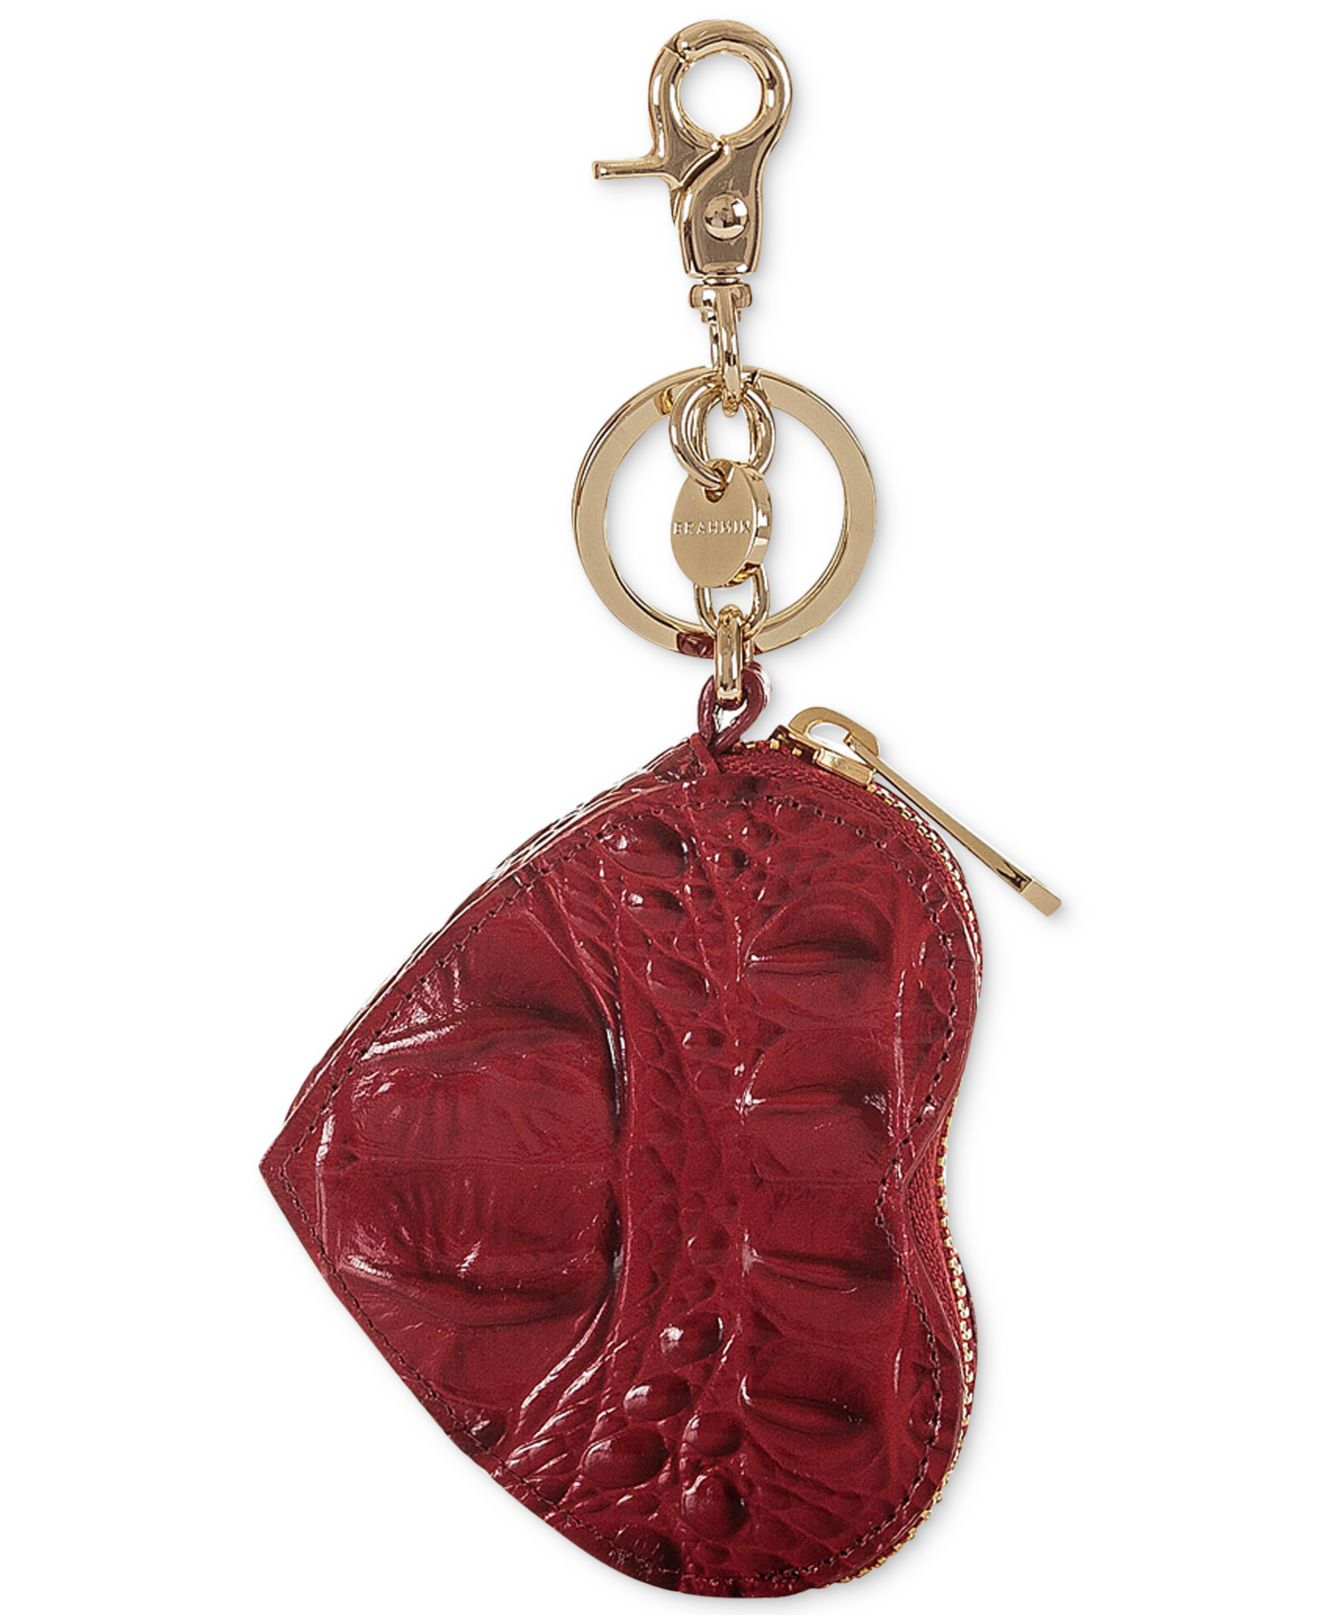 red brahmin purse